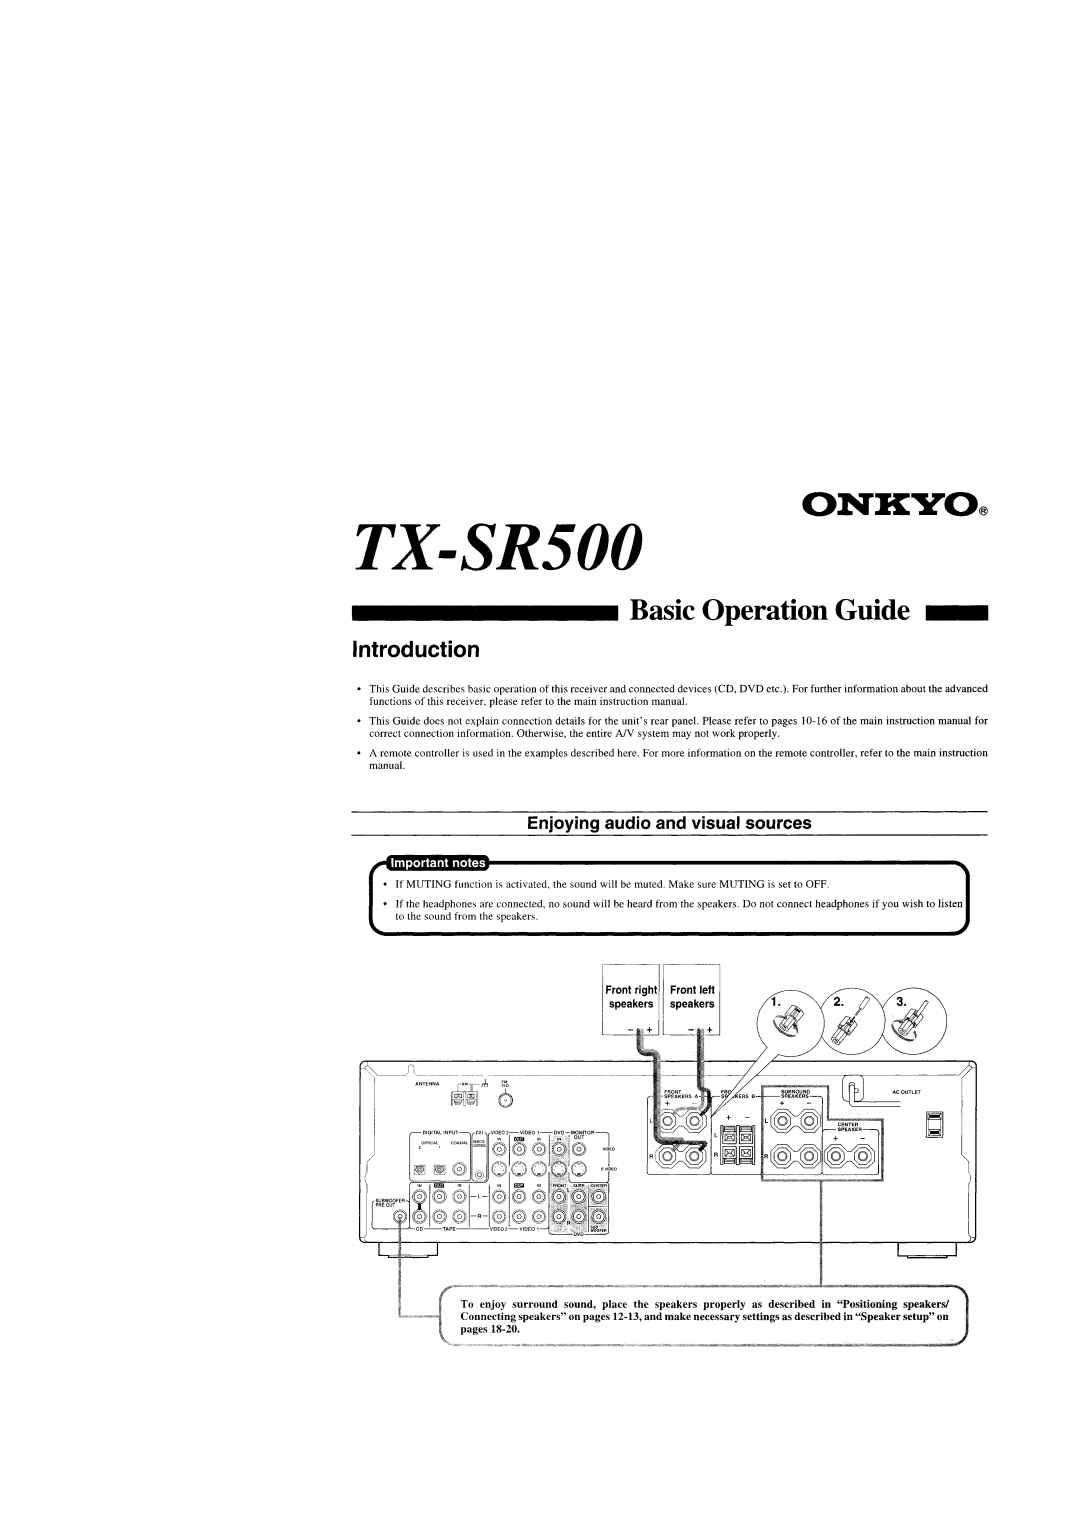 Onkyo TX-SR500 appendix 